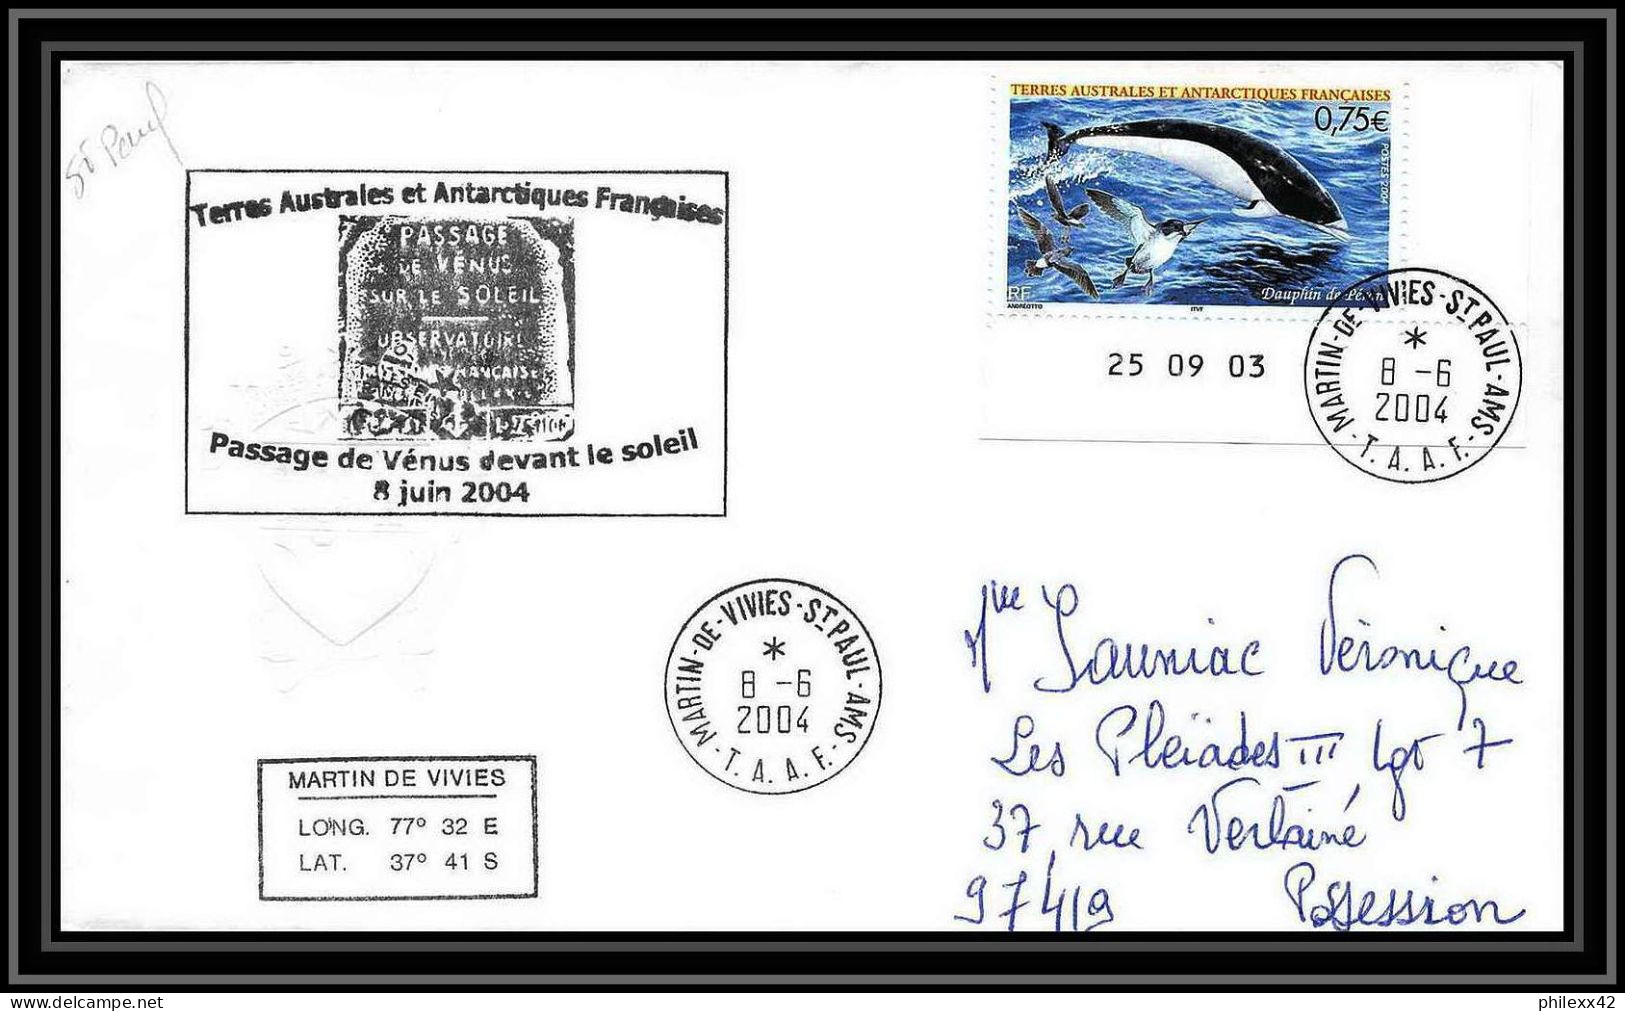 2446 ANTARCTIC Terres Australes TAAF Lettre Dufresne 2 N°395 PASSAGE DE VENUS DEVANT LE SOLEIL 2004 Coin Daté Dauphin - Antarctic Expeditions